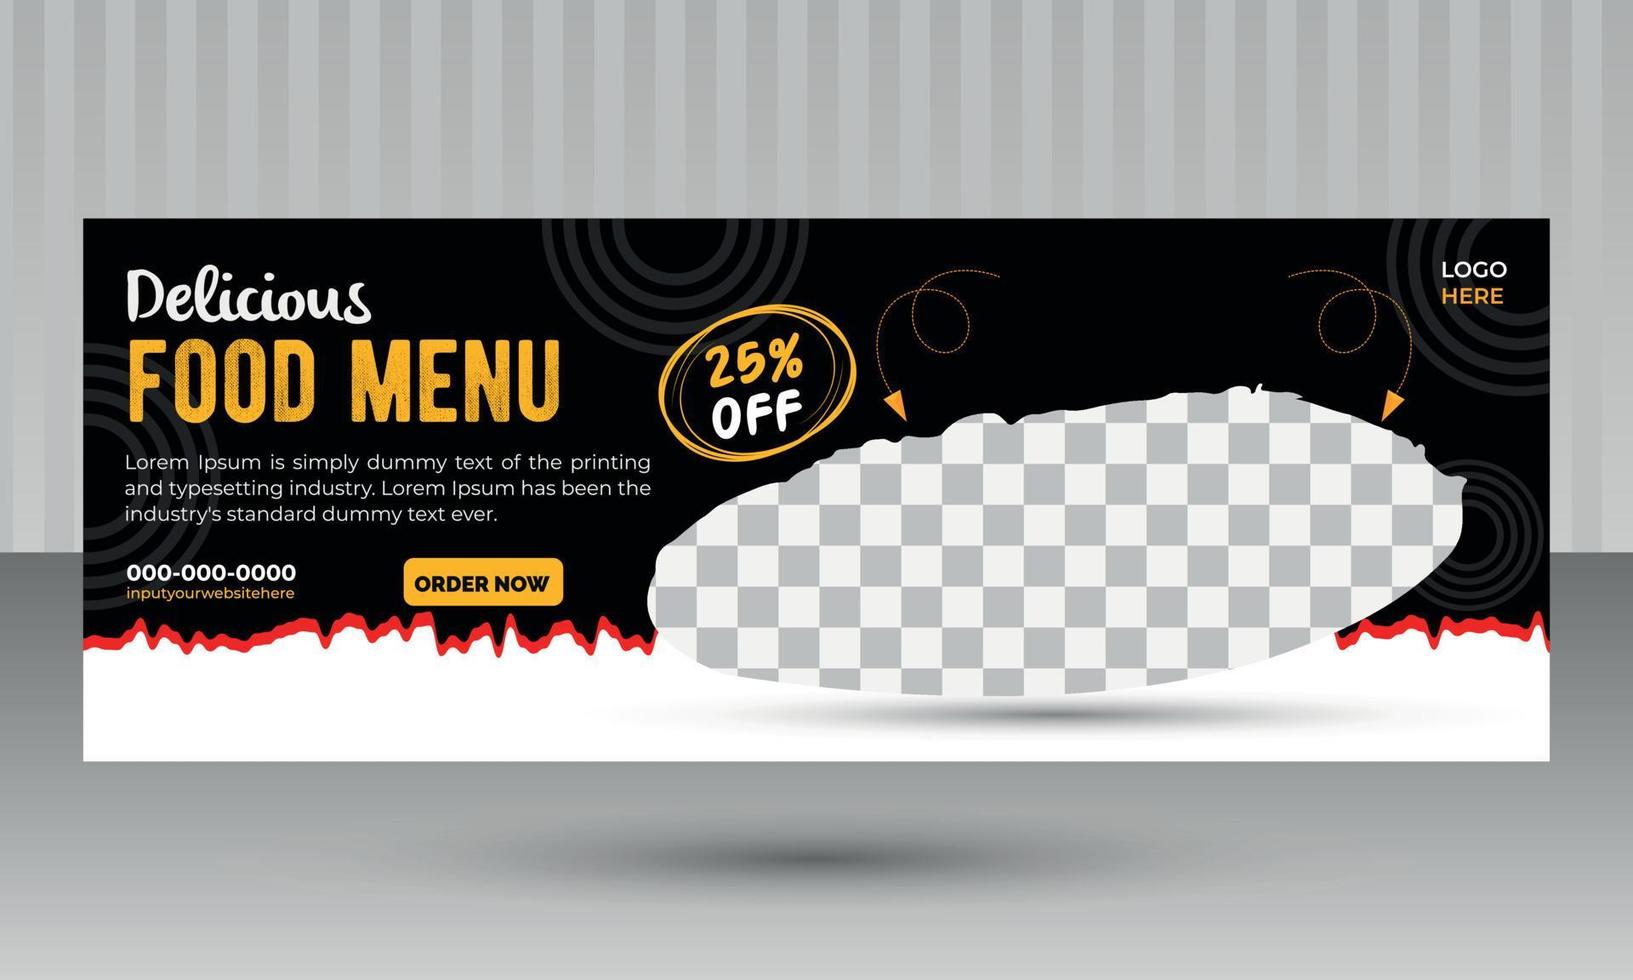 banner di social media alimentare e modello di copertina con sfondo nero per il marketing alimentare del ristorante vettore